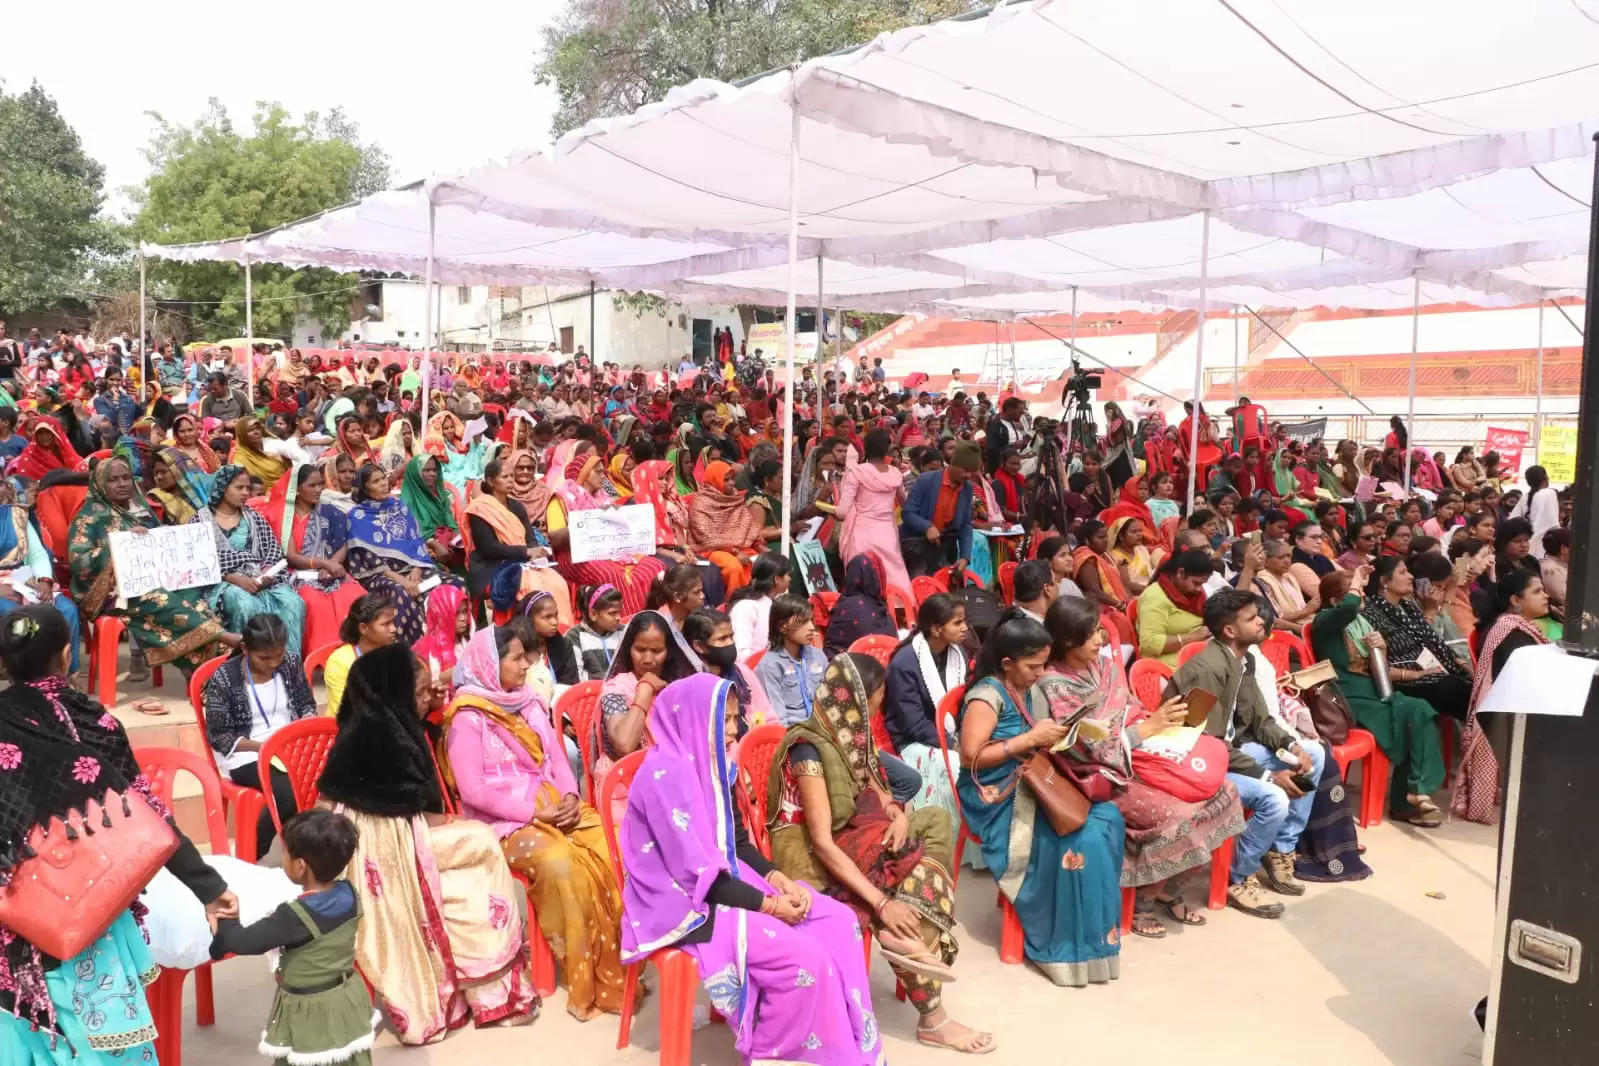 Varanasi News: शास्त्री घाट पर महिला अधिकार सम्मेलन का आयोजन किया गया